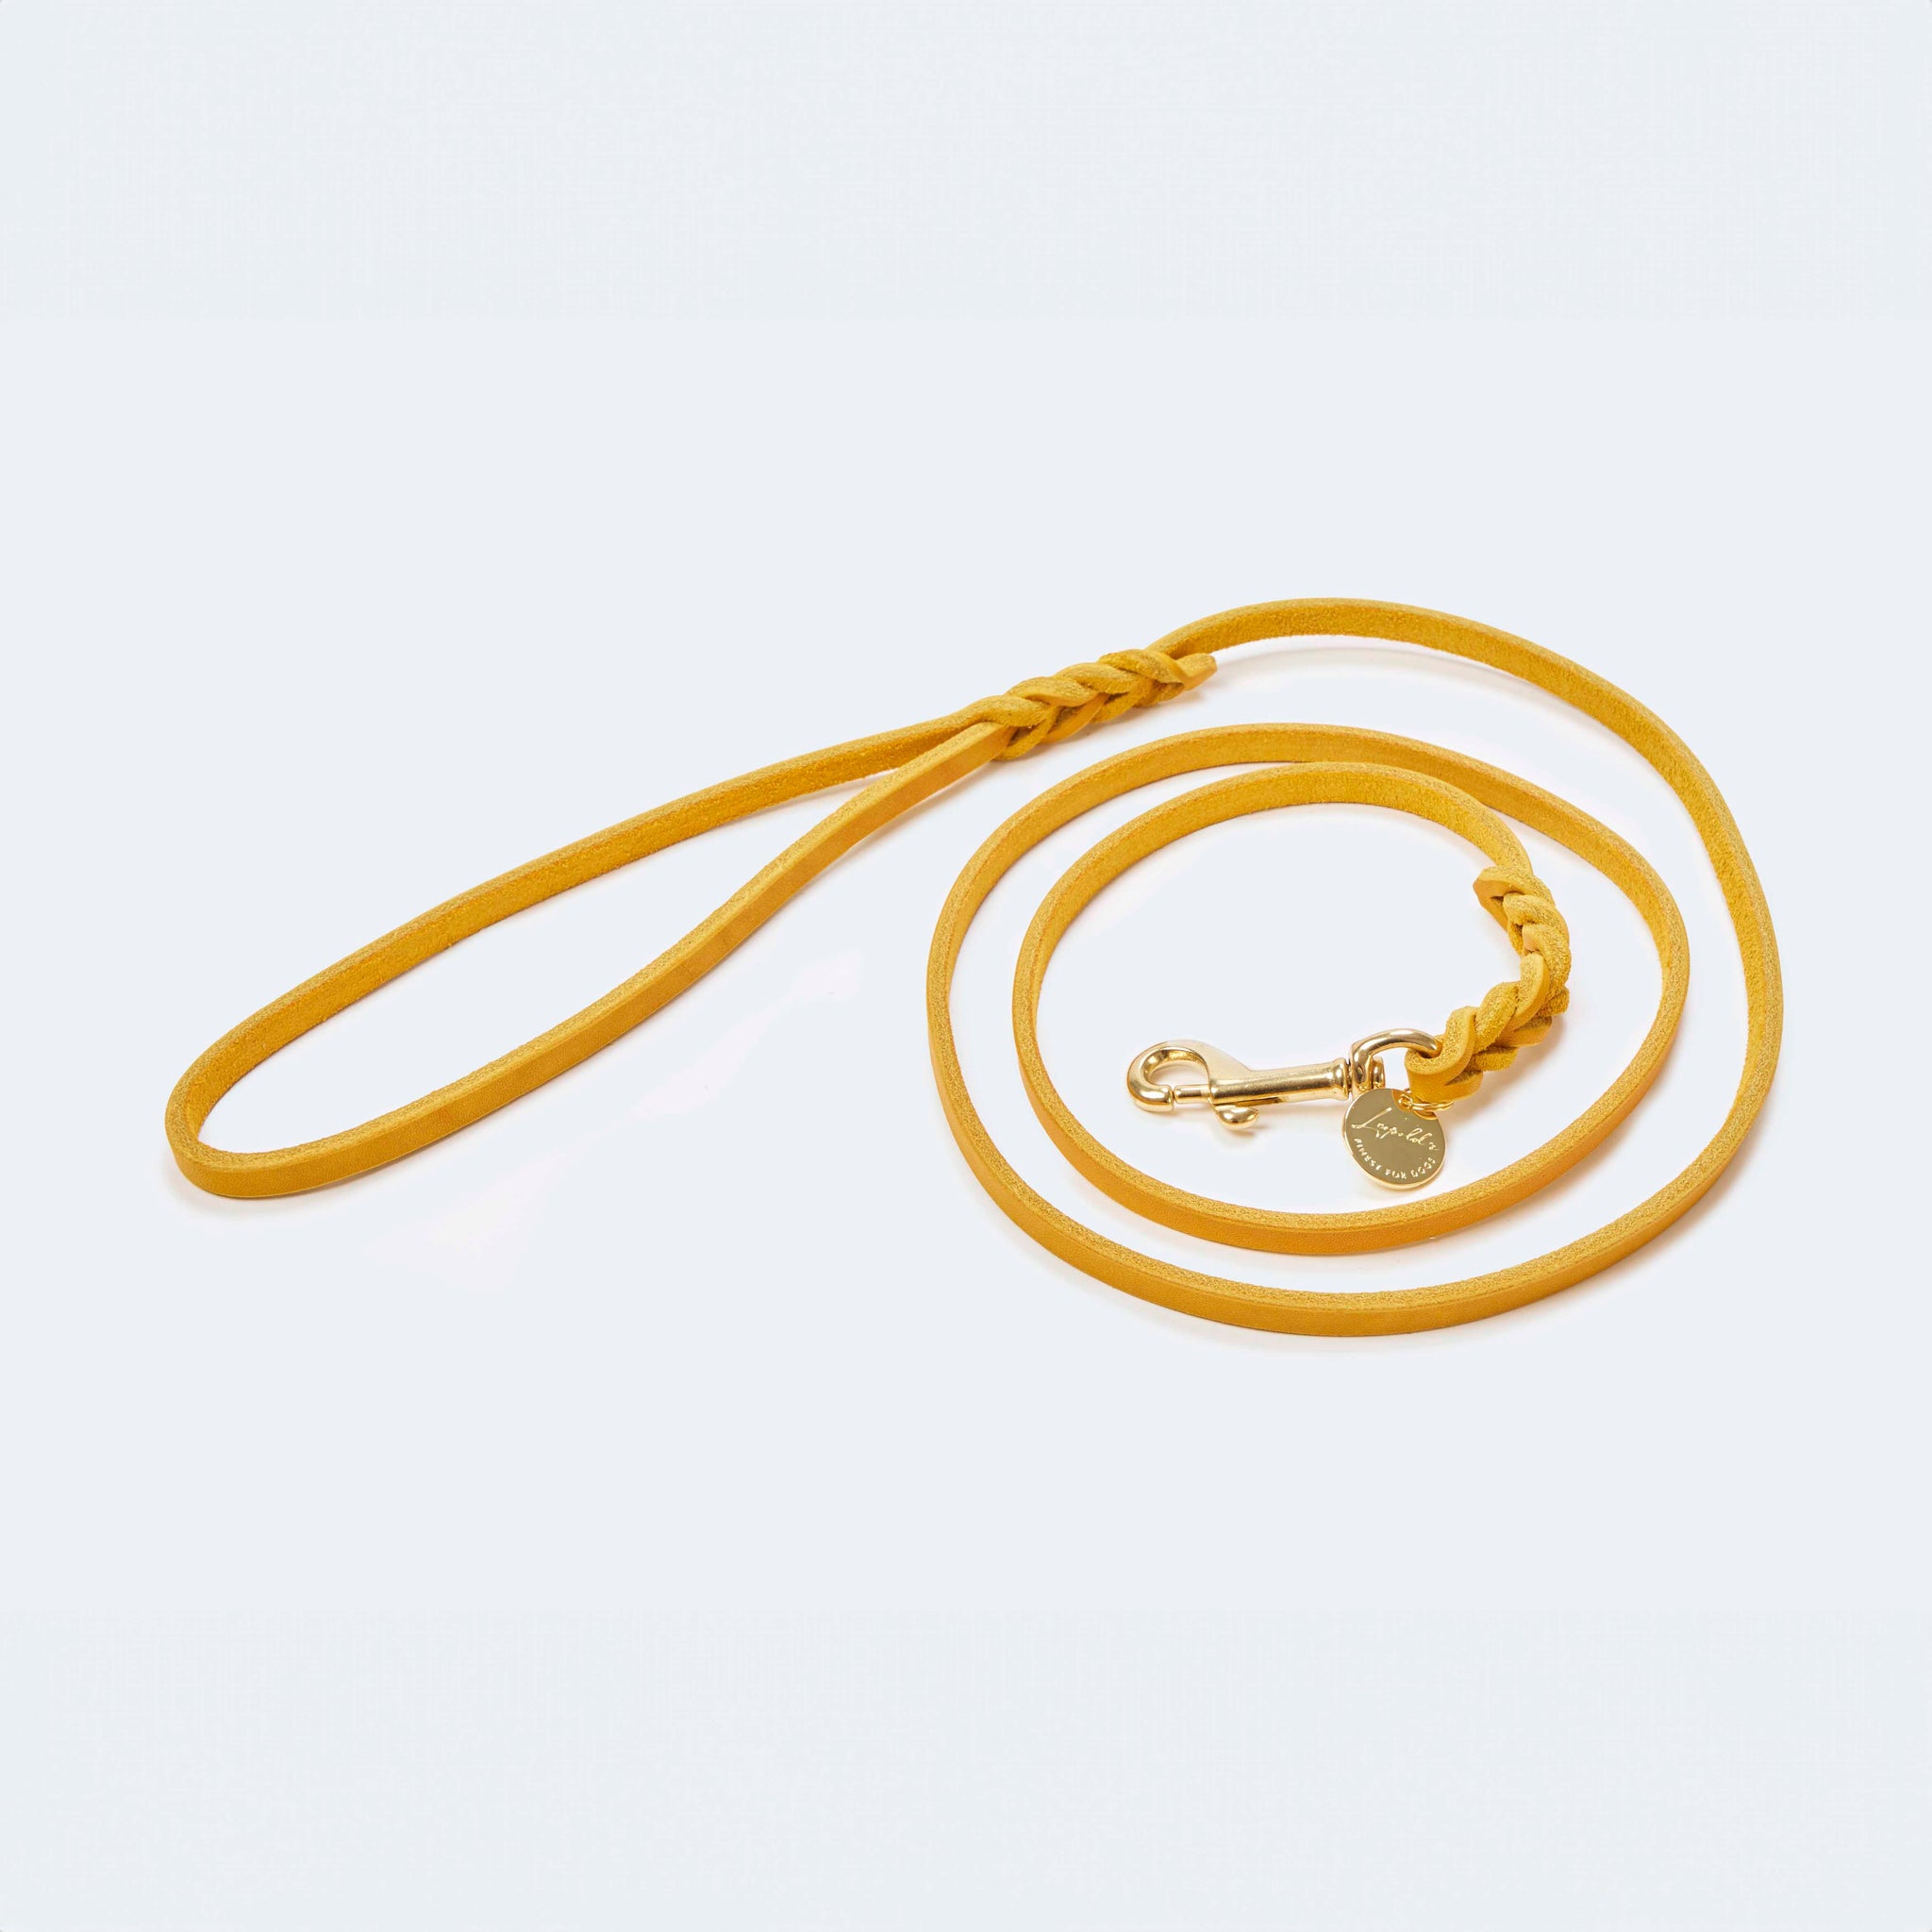 Leichte Hundeleine Fettleder Gelb Gold - von Leopold's kaufen bei leopolds-finest [Gelb-Gold]